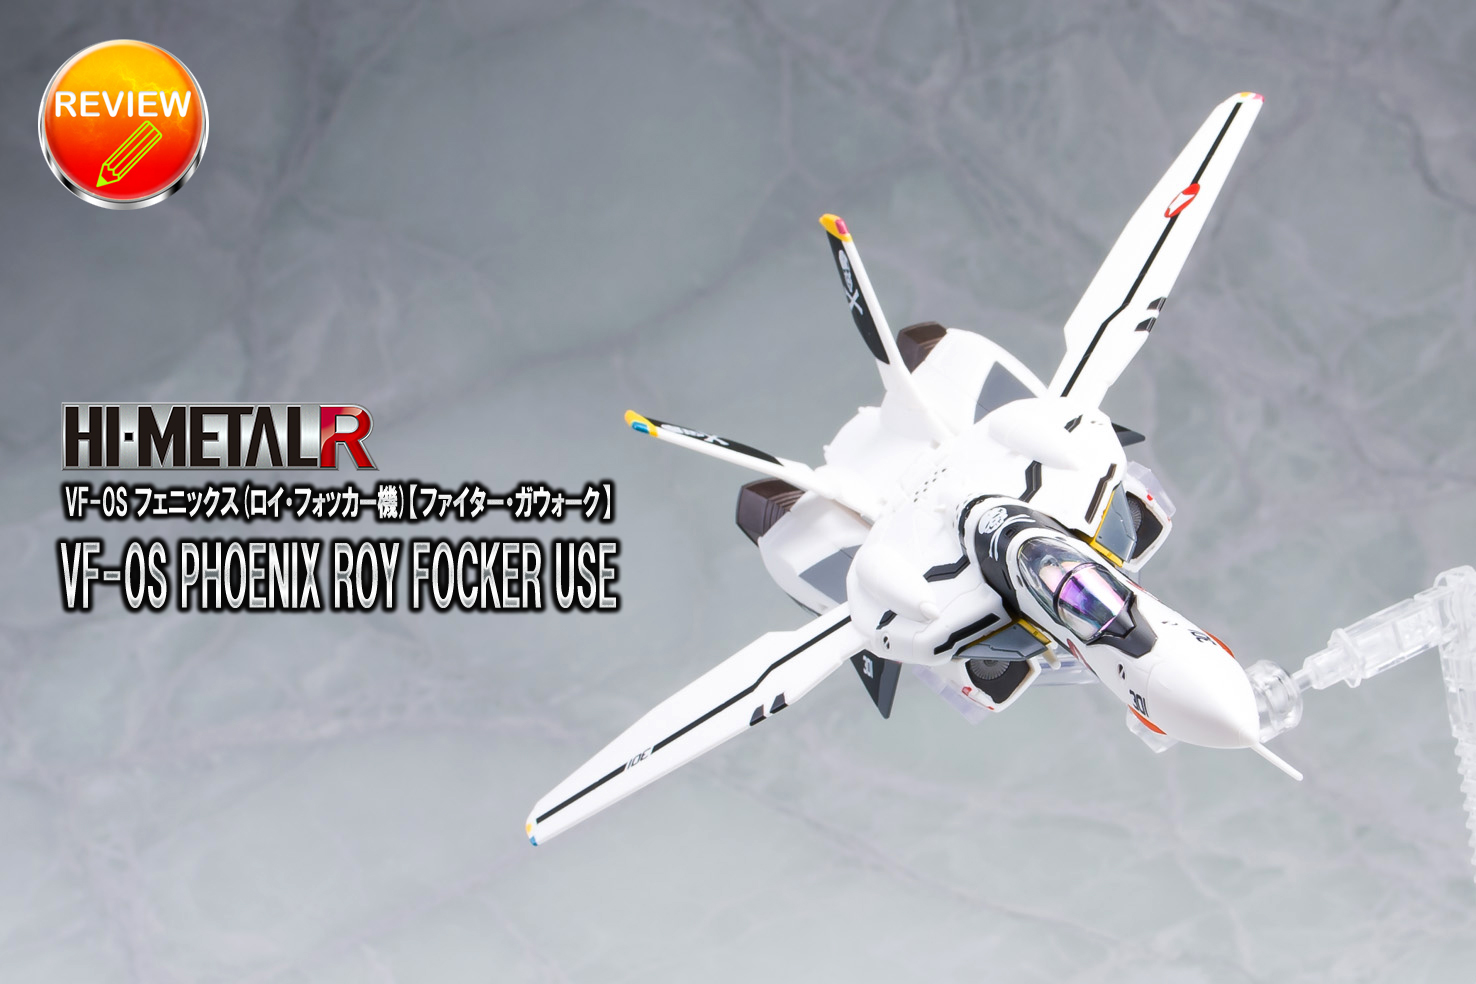 レビュー】HI-METAL R VF-0S フェニックス(ロイ・フォッカー機